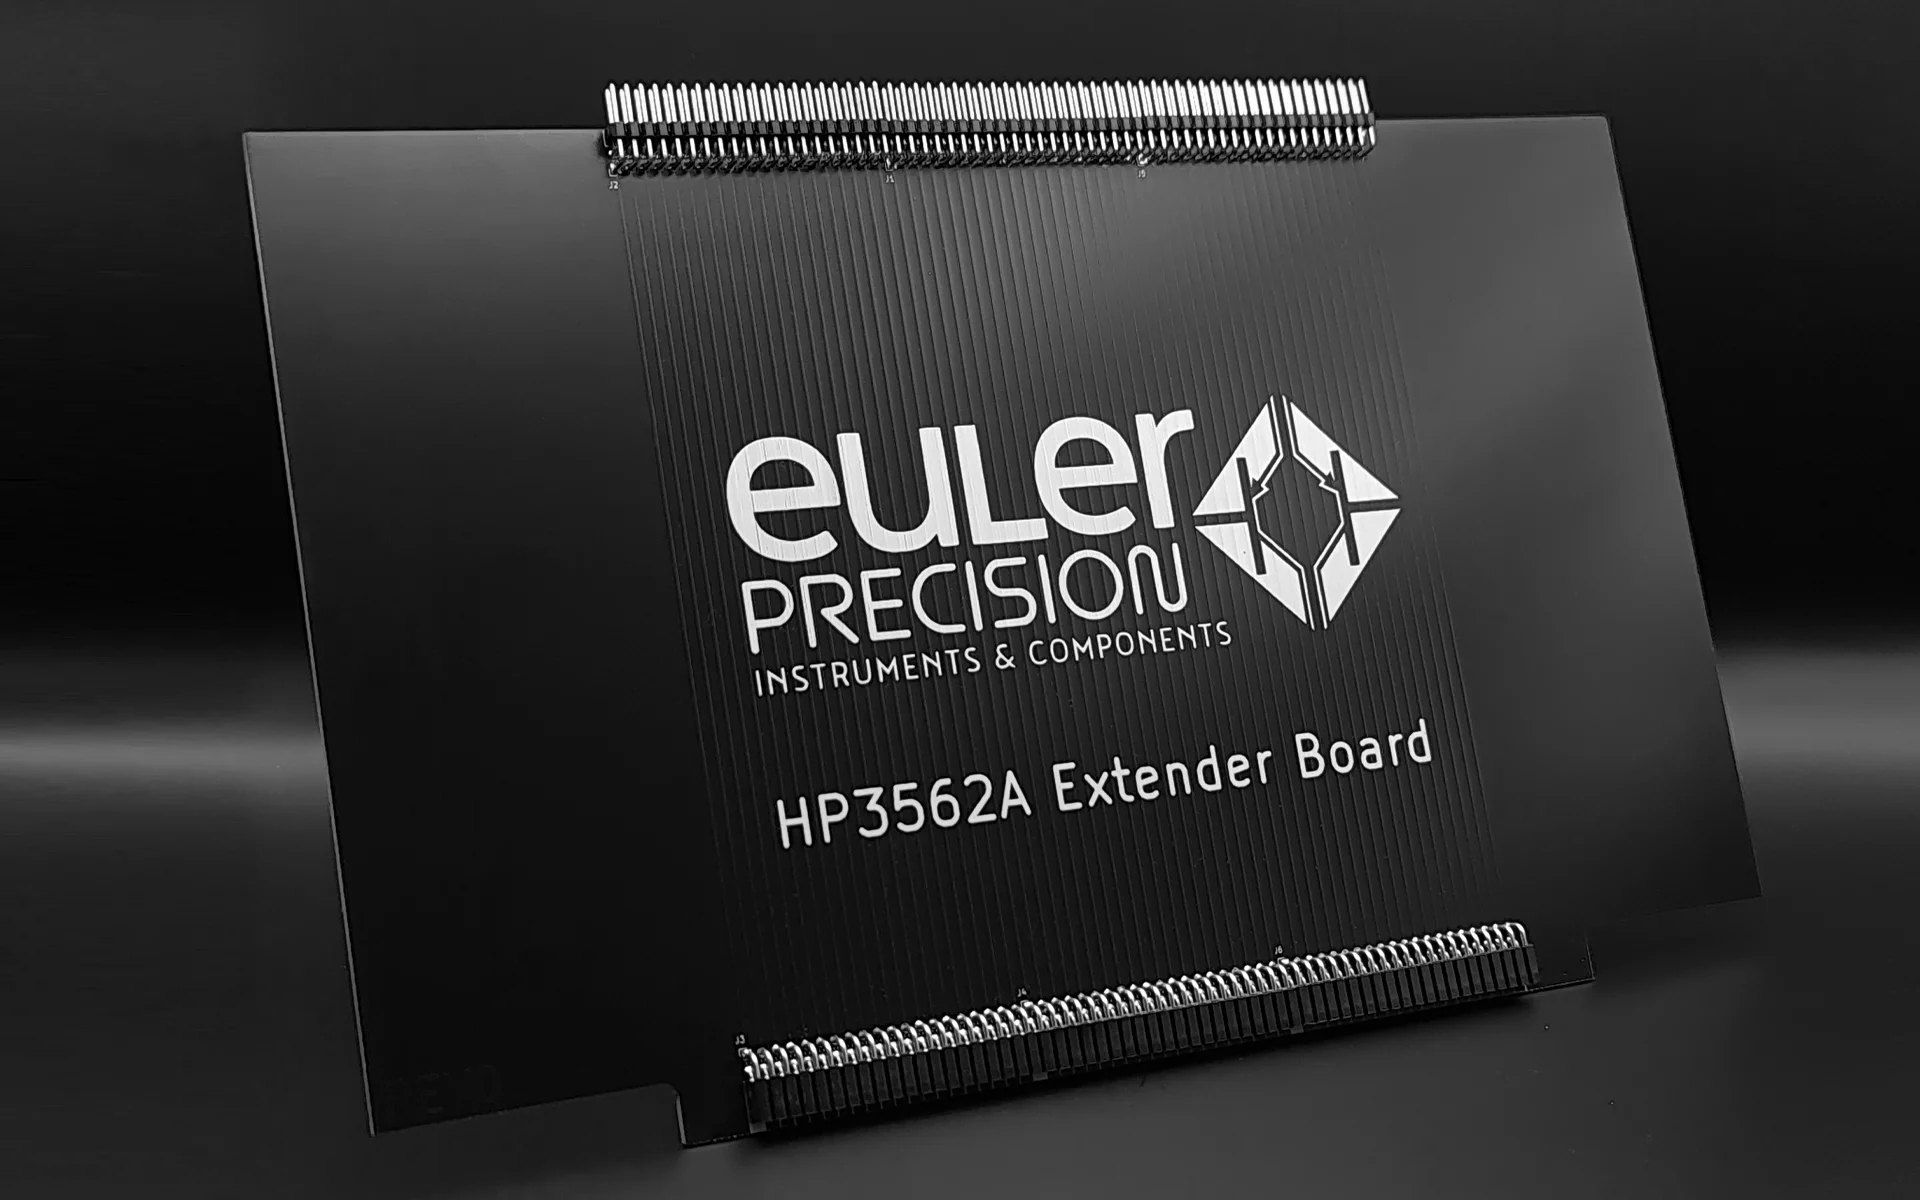 HP3562 Extender Board